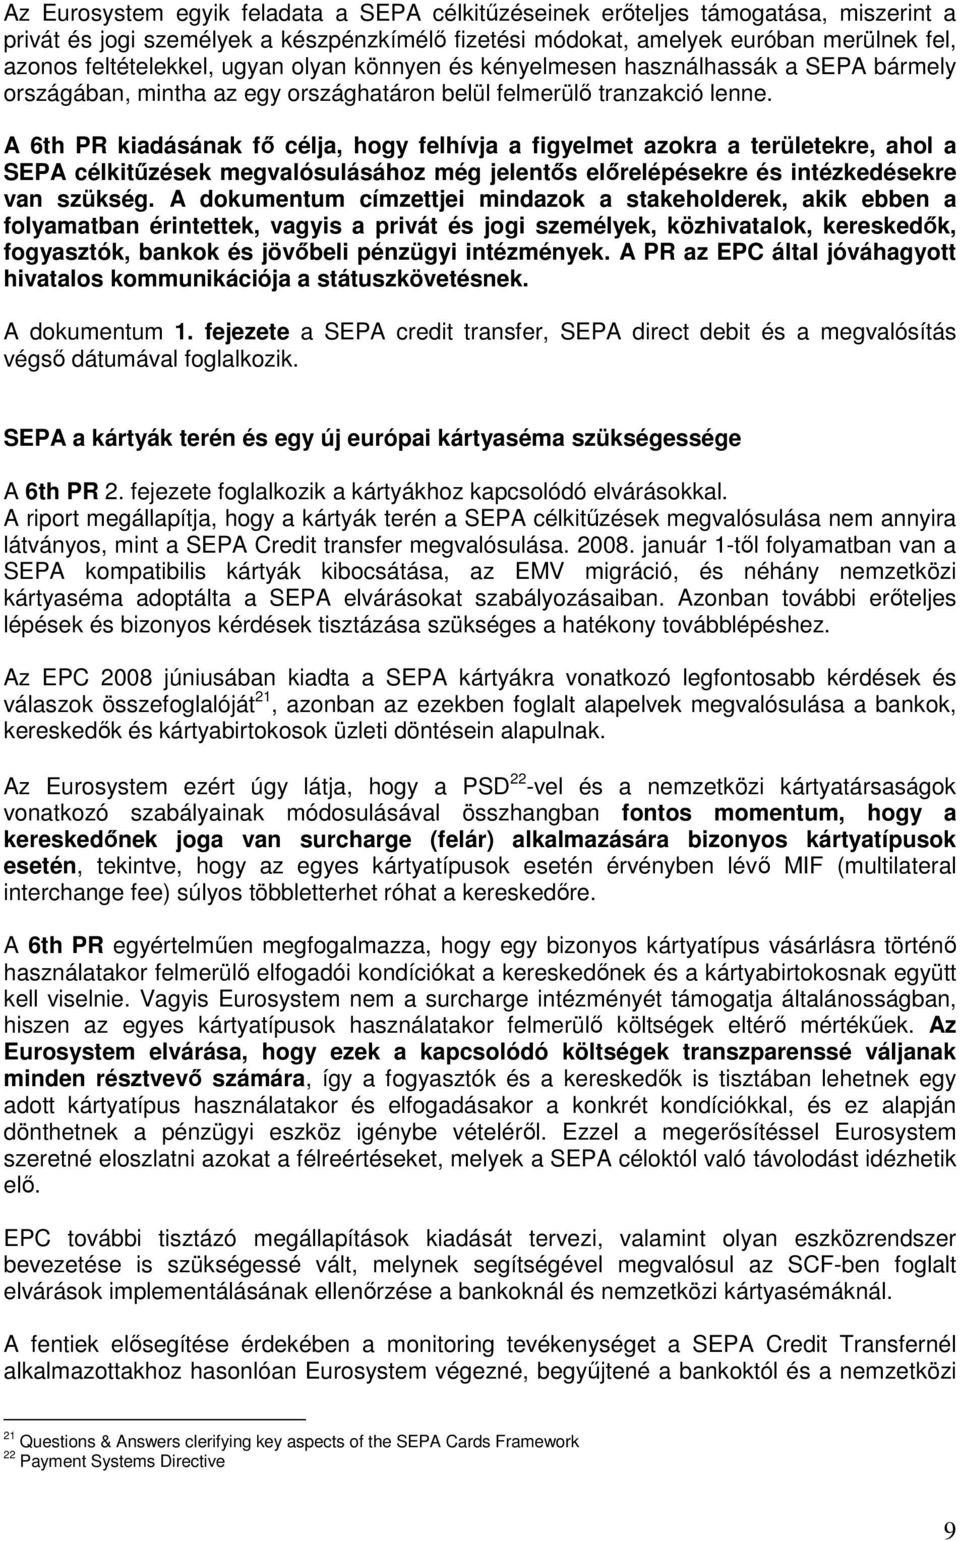 A 6th PR kiadásának fı célja, hogy felhívja a figyelmet azokra a területekre, ahol a SEPA célkitőzések megvalósulásához még jelentıs elırelépésekre és intézkedésekre van szükség.